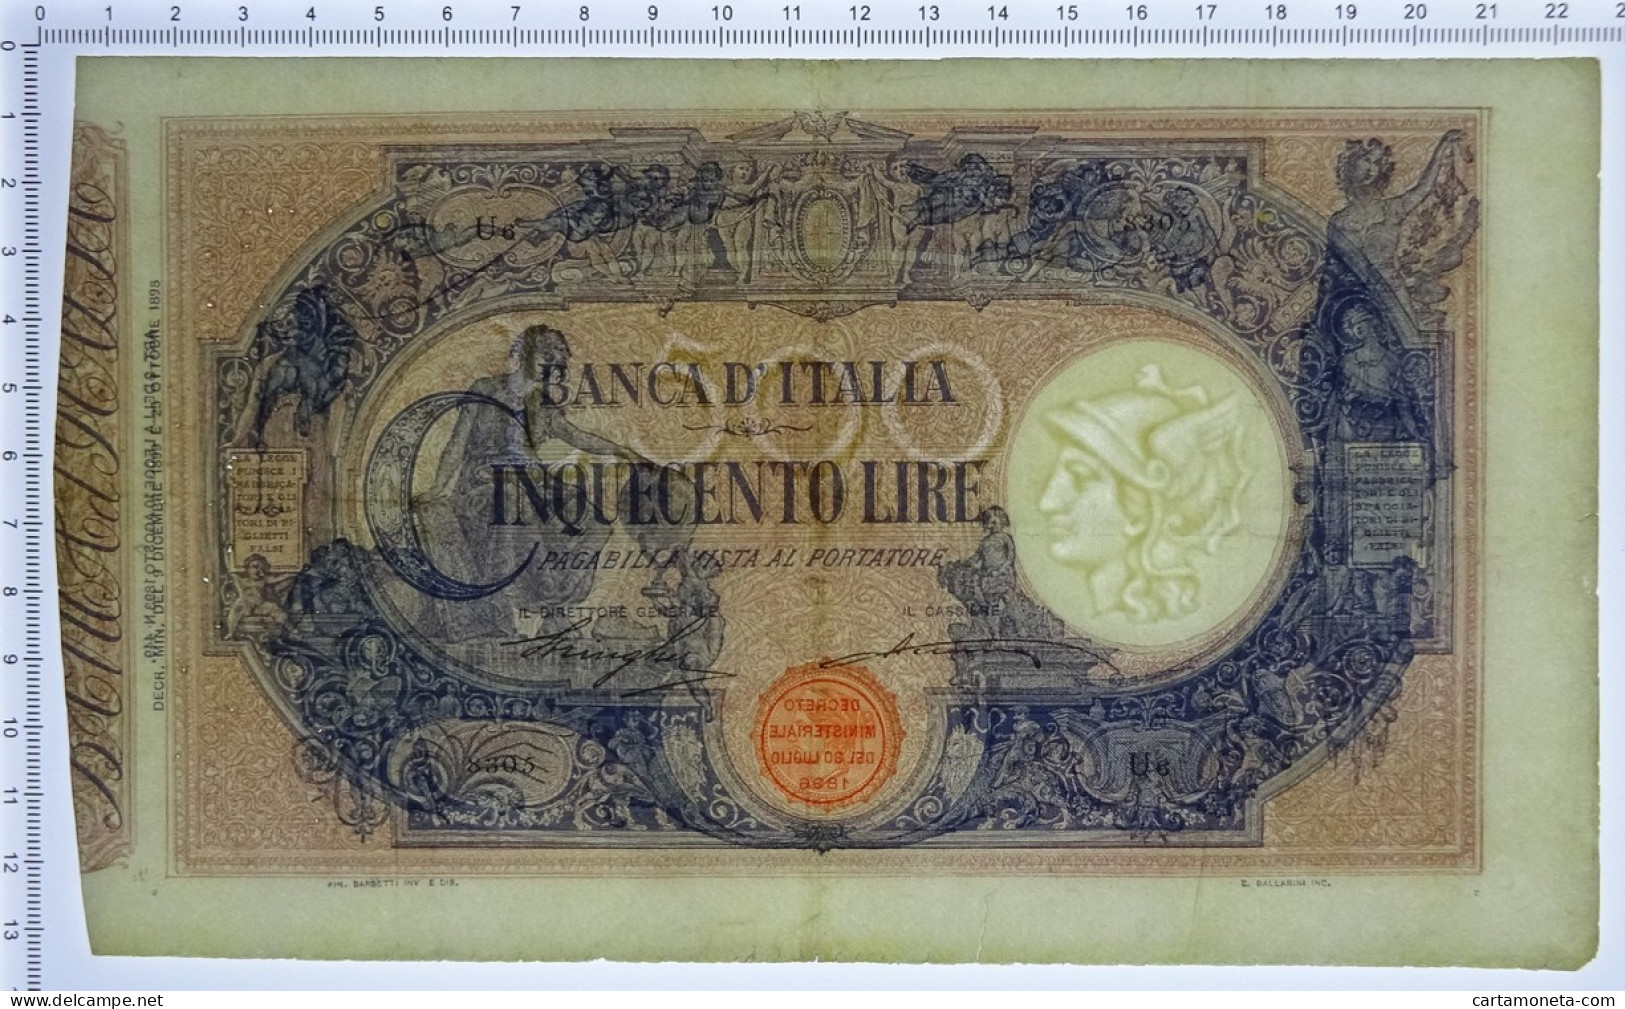 500 LIRE BARBETTI GRANDE C MATRICE LATERALE REGNO UMBERTO I 09/12/1899 BB/BB+ - Regno D'Italia – Other